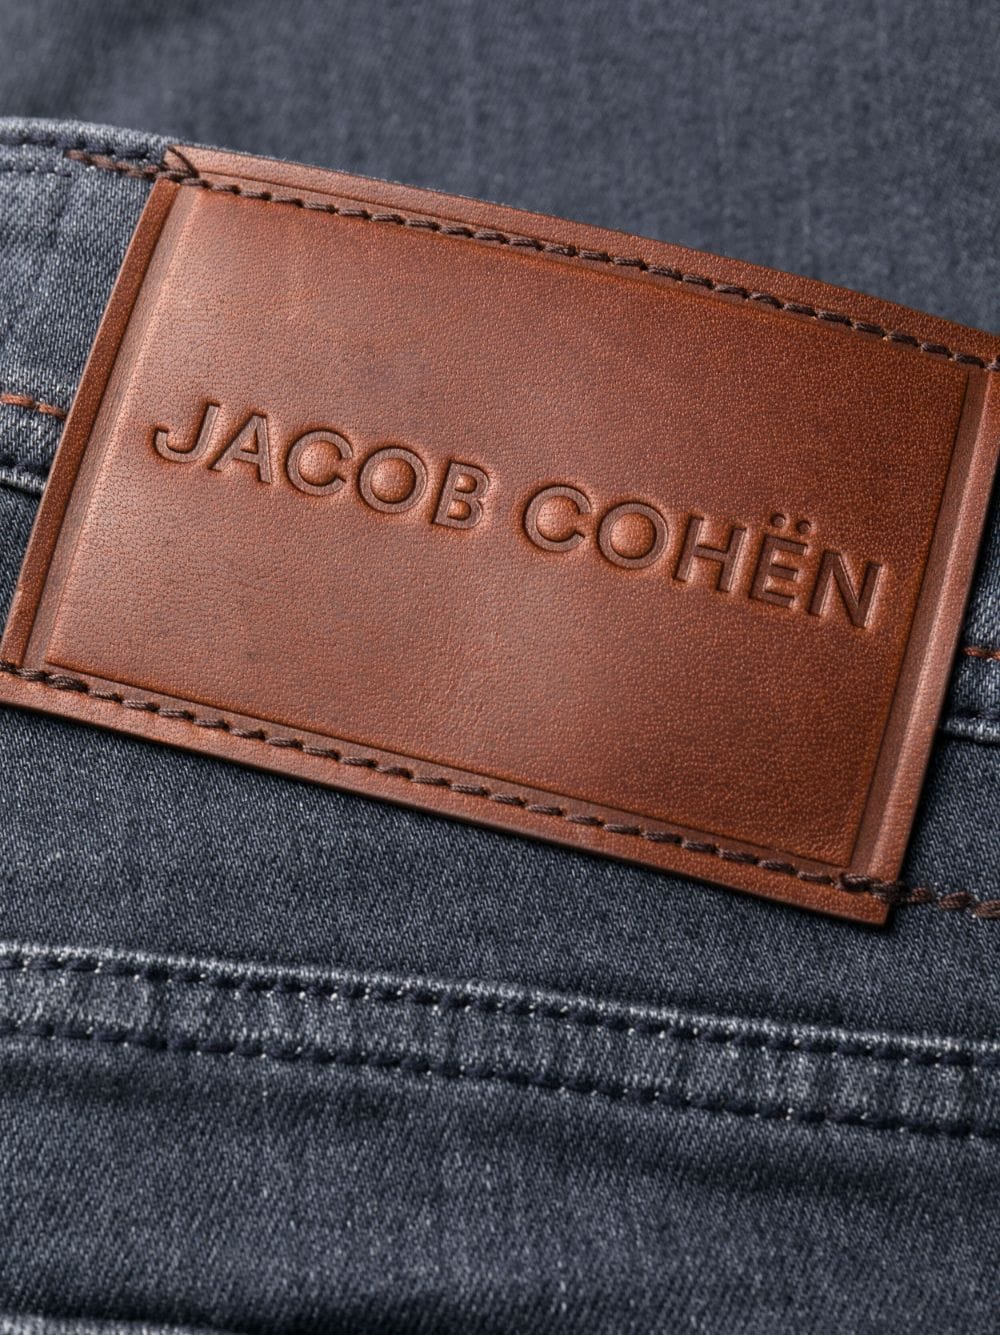 Jacob Cohen Jean droit grey - Lothaire